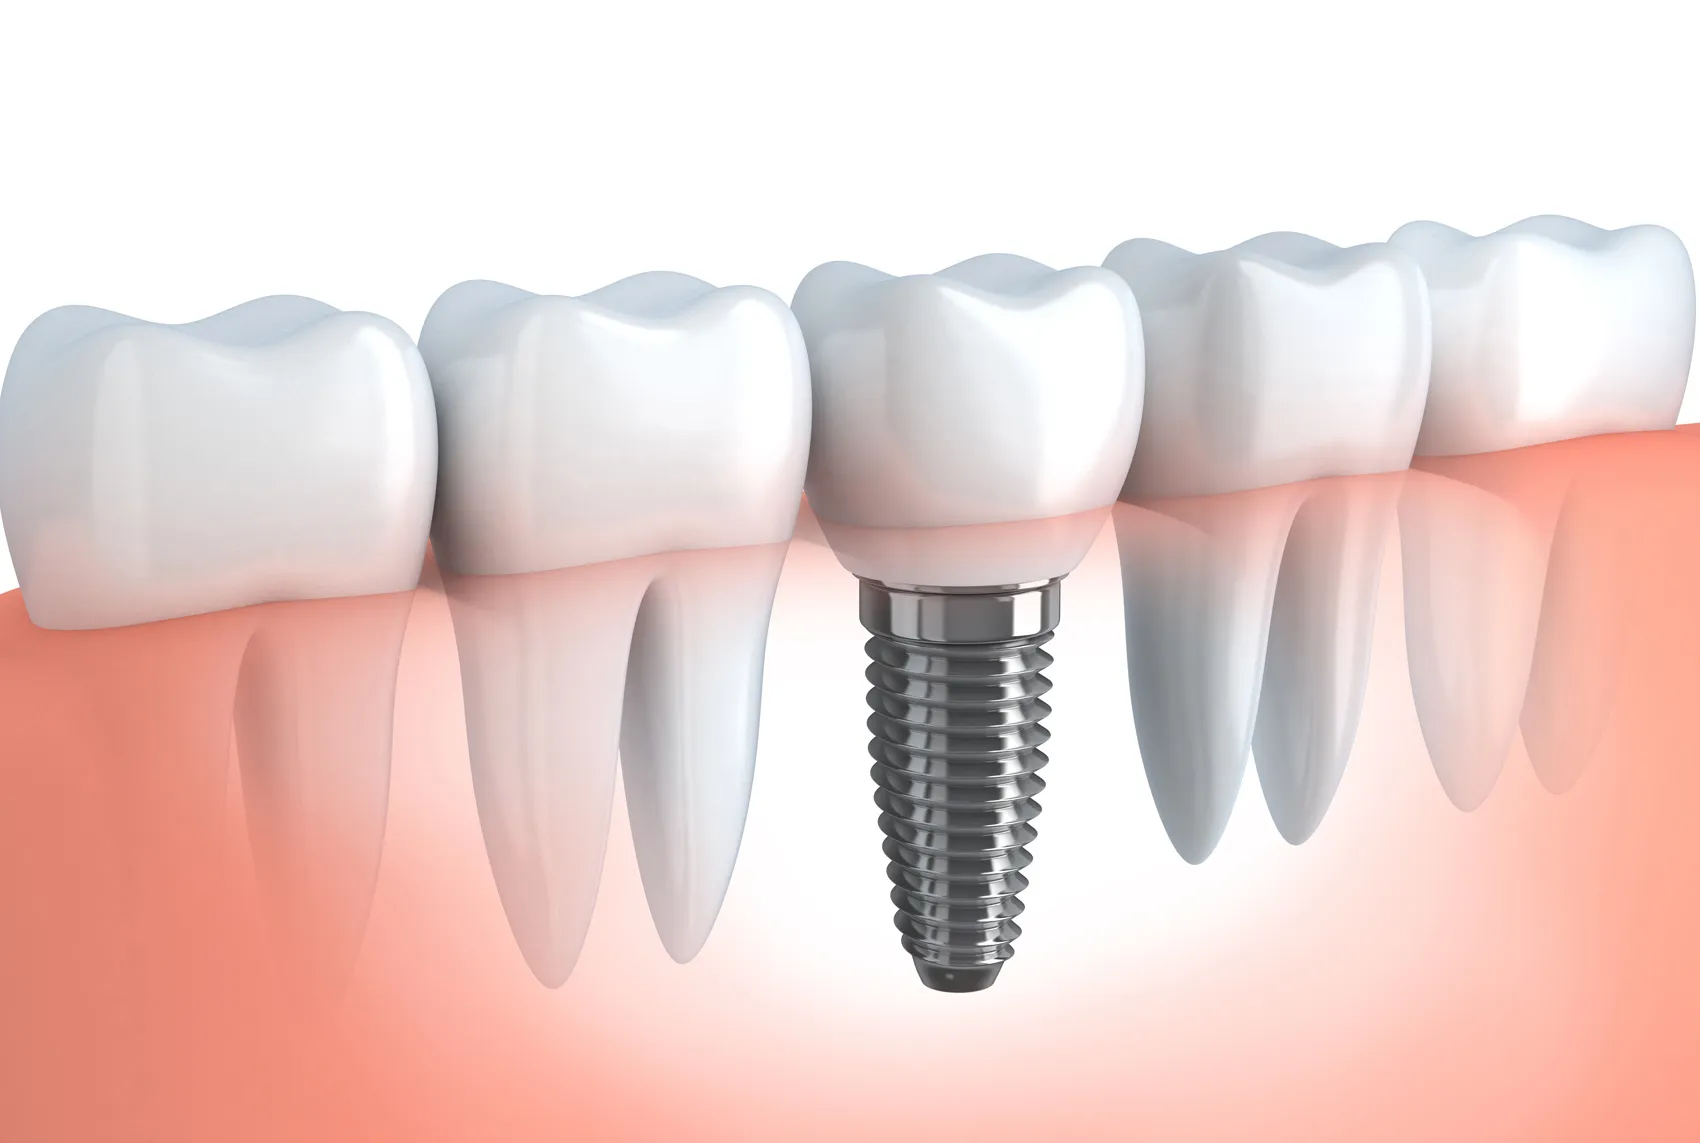 元の健康な歯の状態にもっとも近づく治療法が「インプラント」